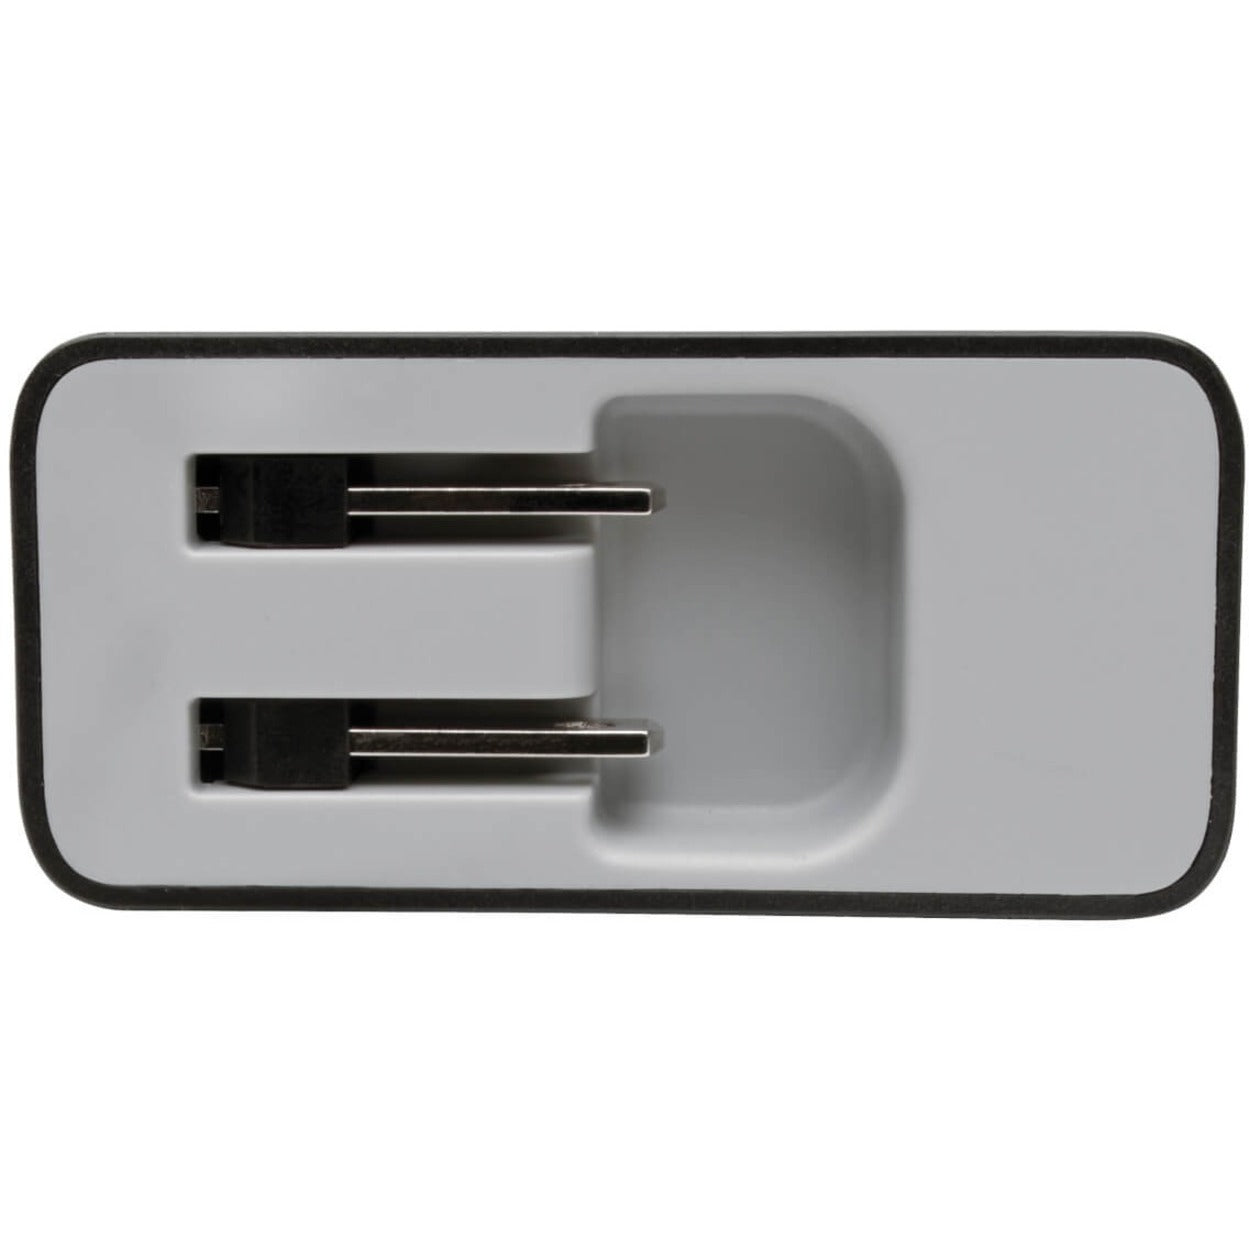 Tripp Lite U280-W02-A1C1 AC Adaptateur 2PT USB Mur Chargeur avec USB Type C 51W Puissance 2 Garantie Year